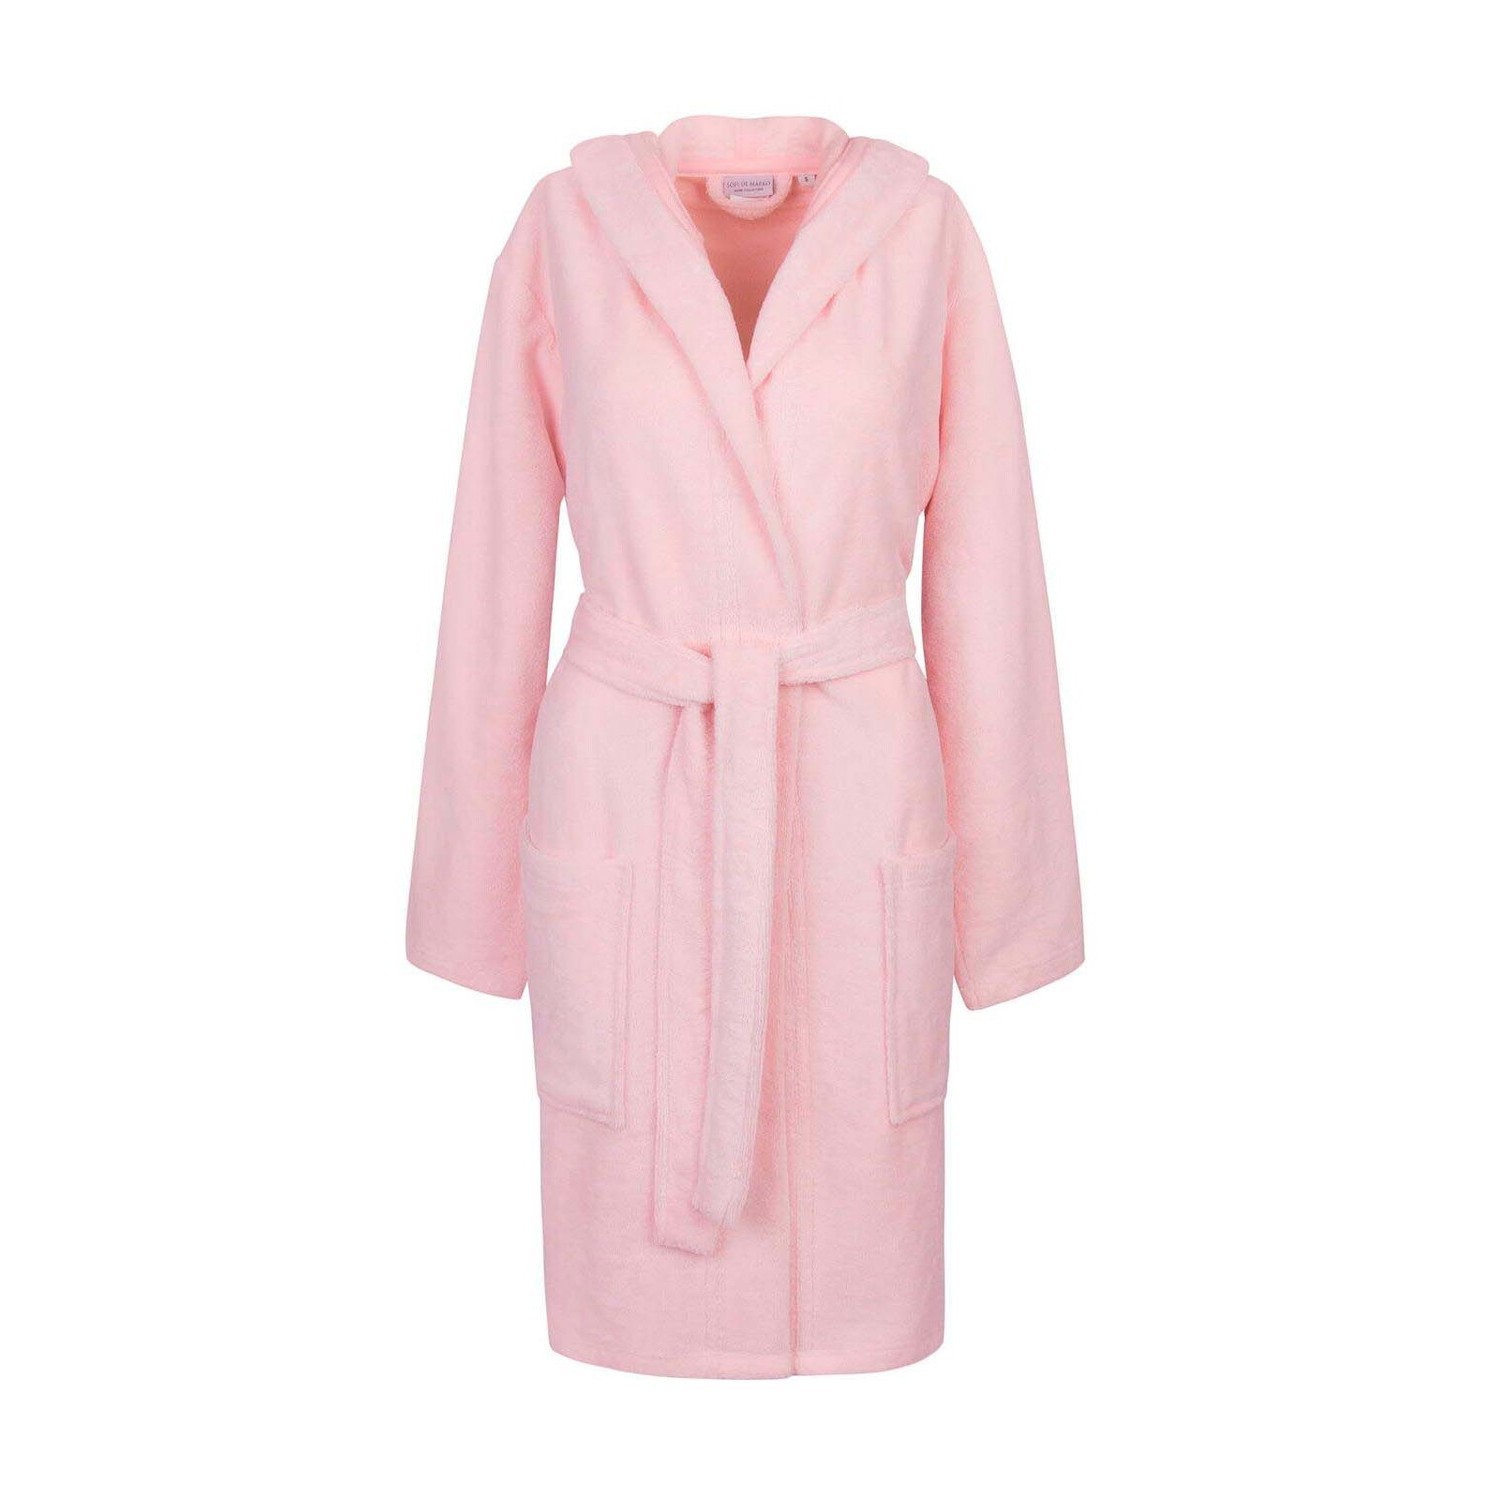 Банный халат Шанти цвет: розовый (XL)